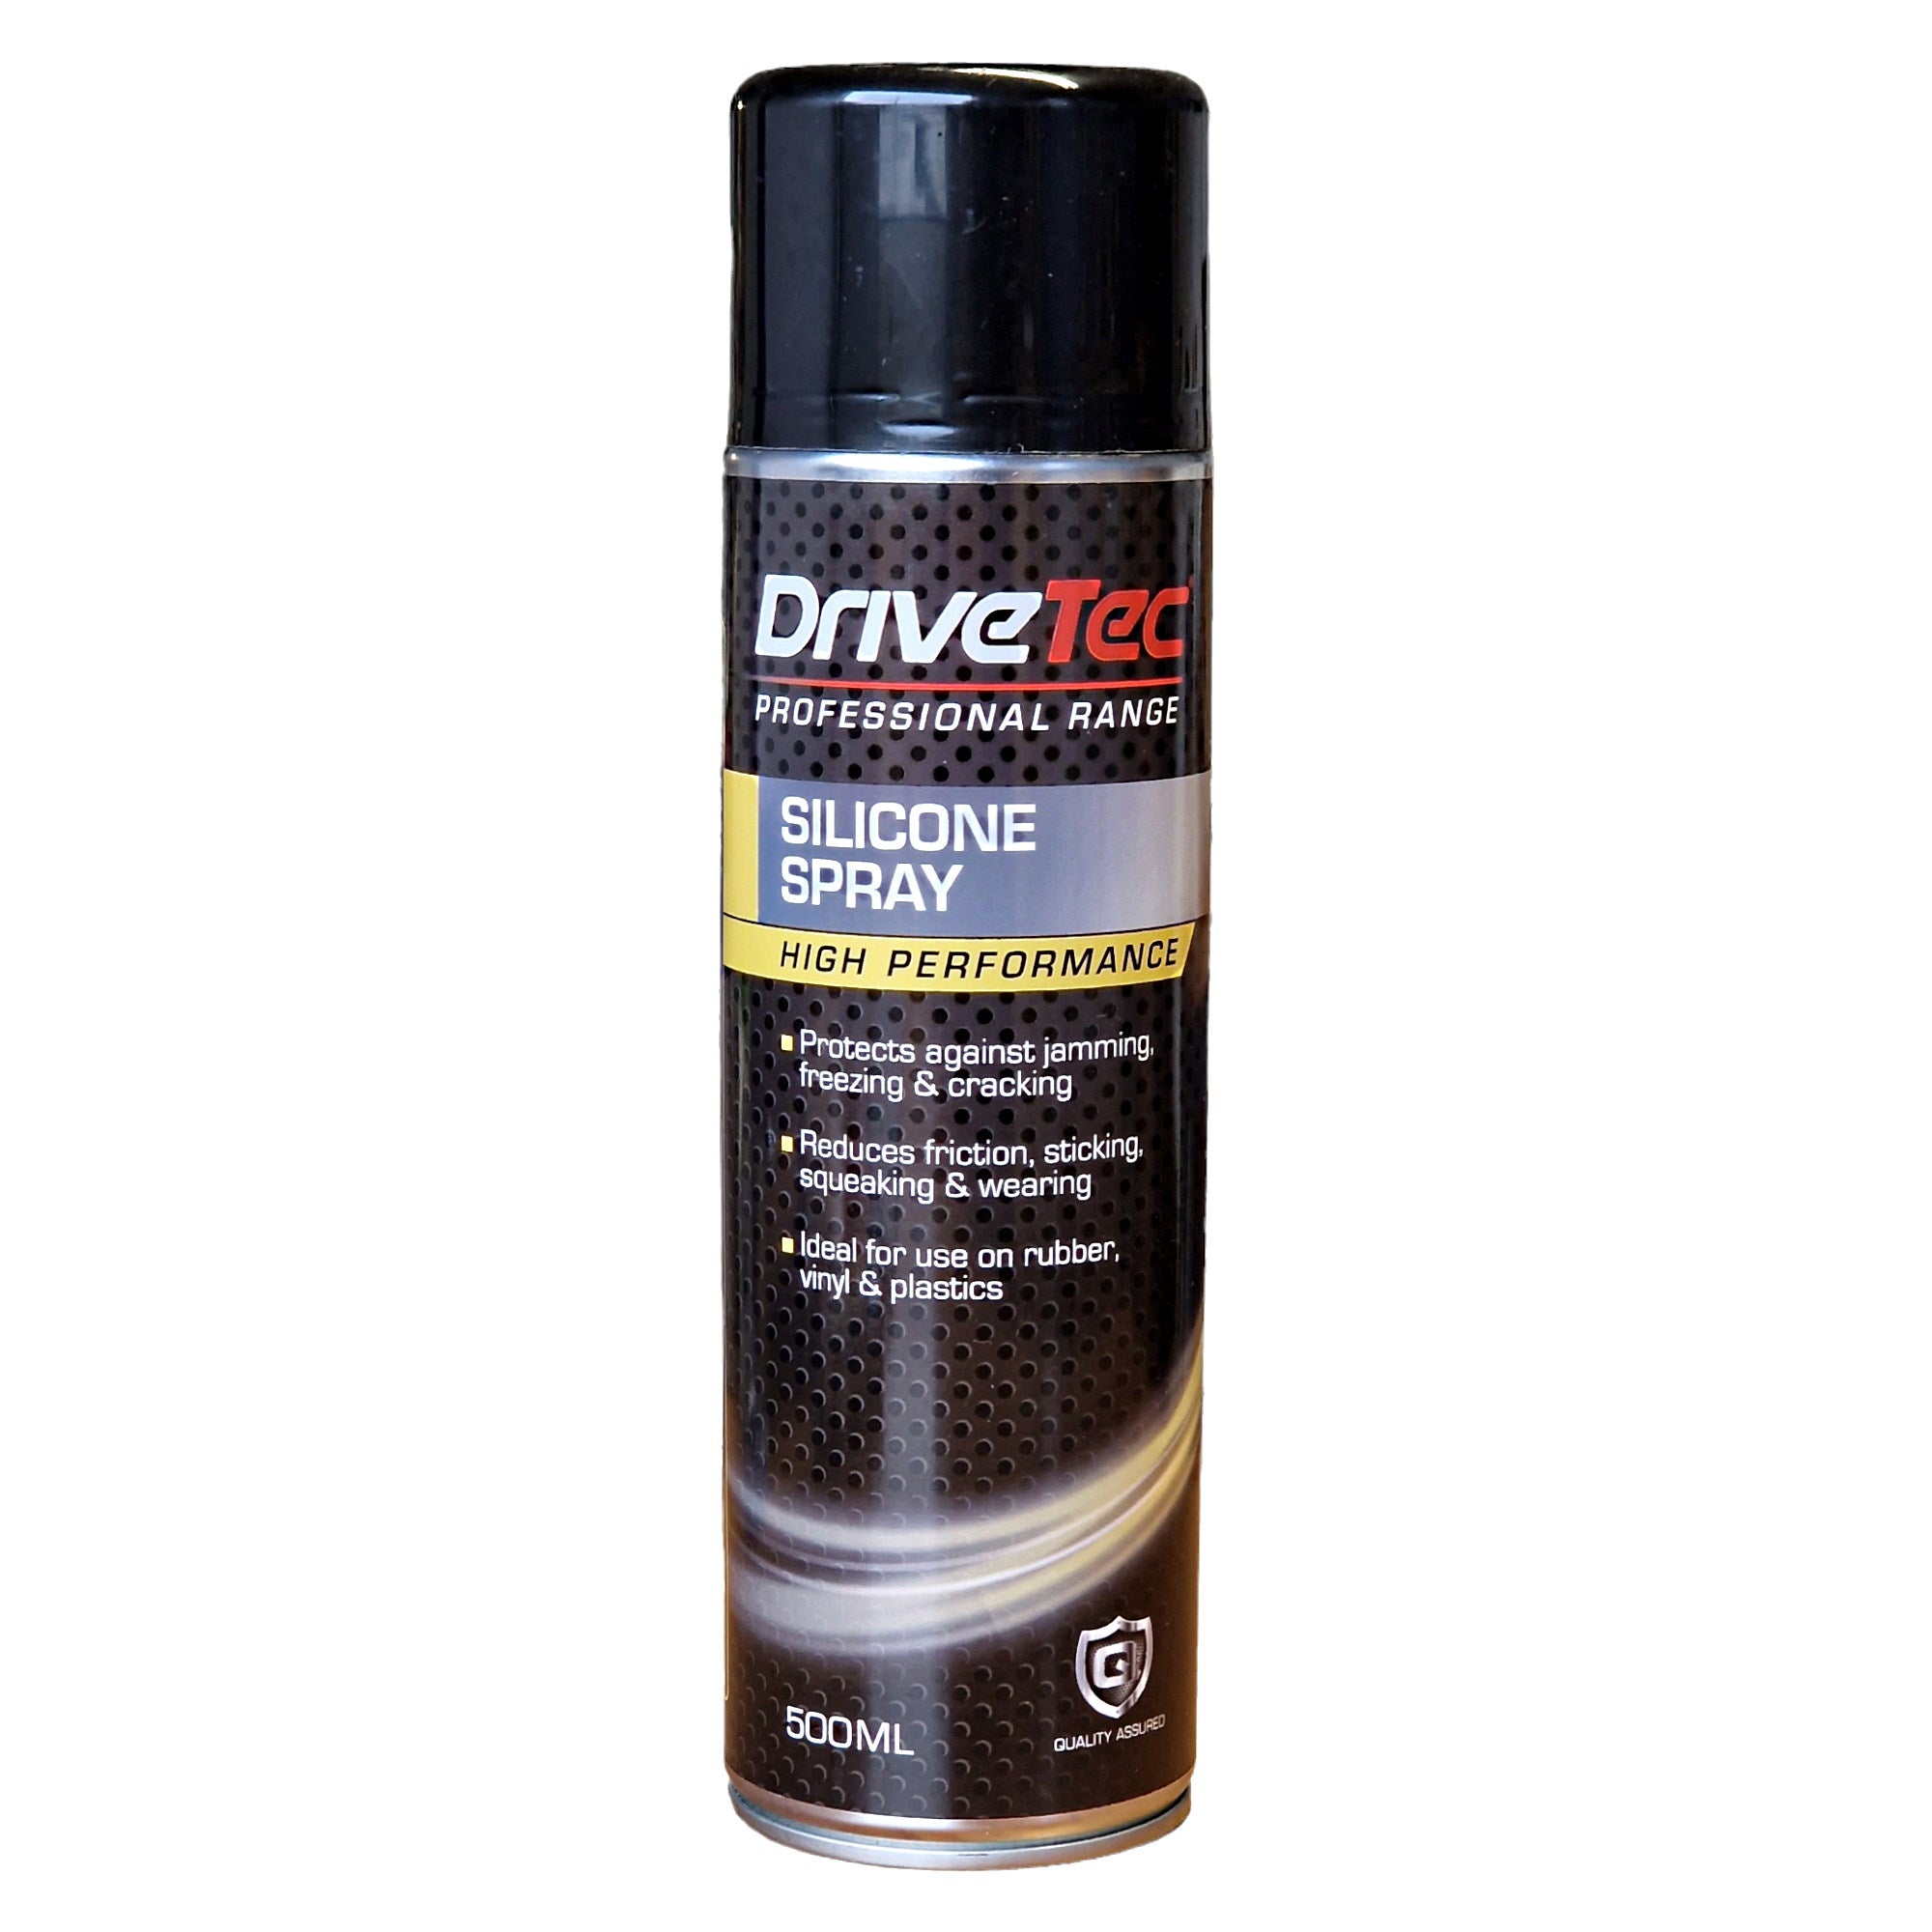 DriveTec Silicone Spray - 500ml